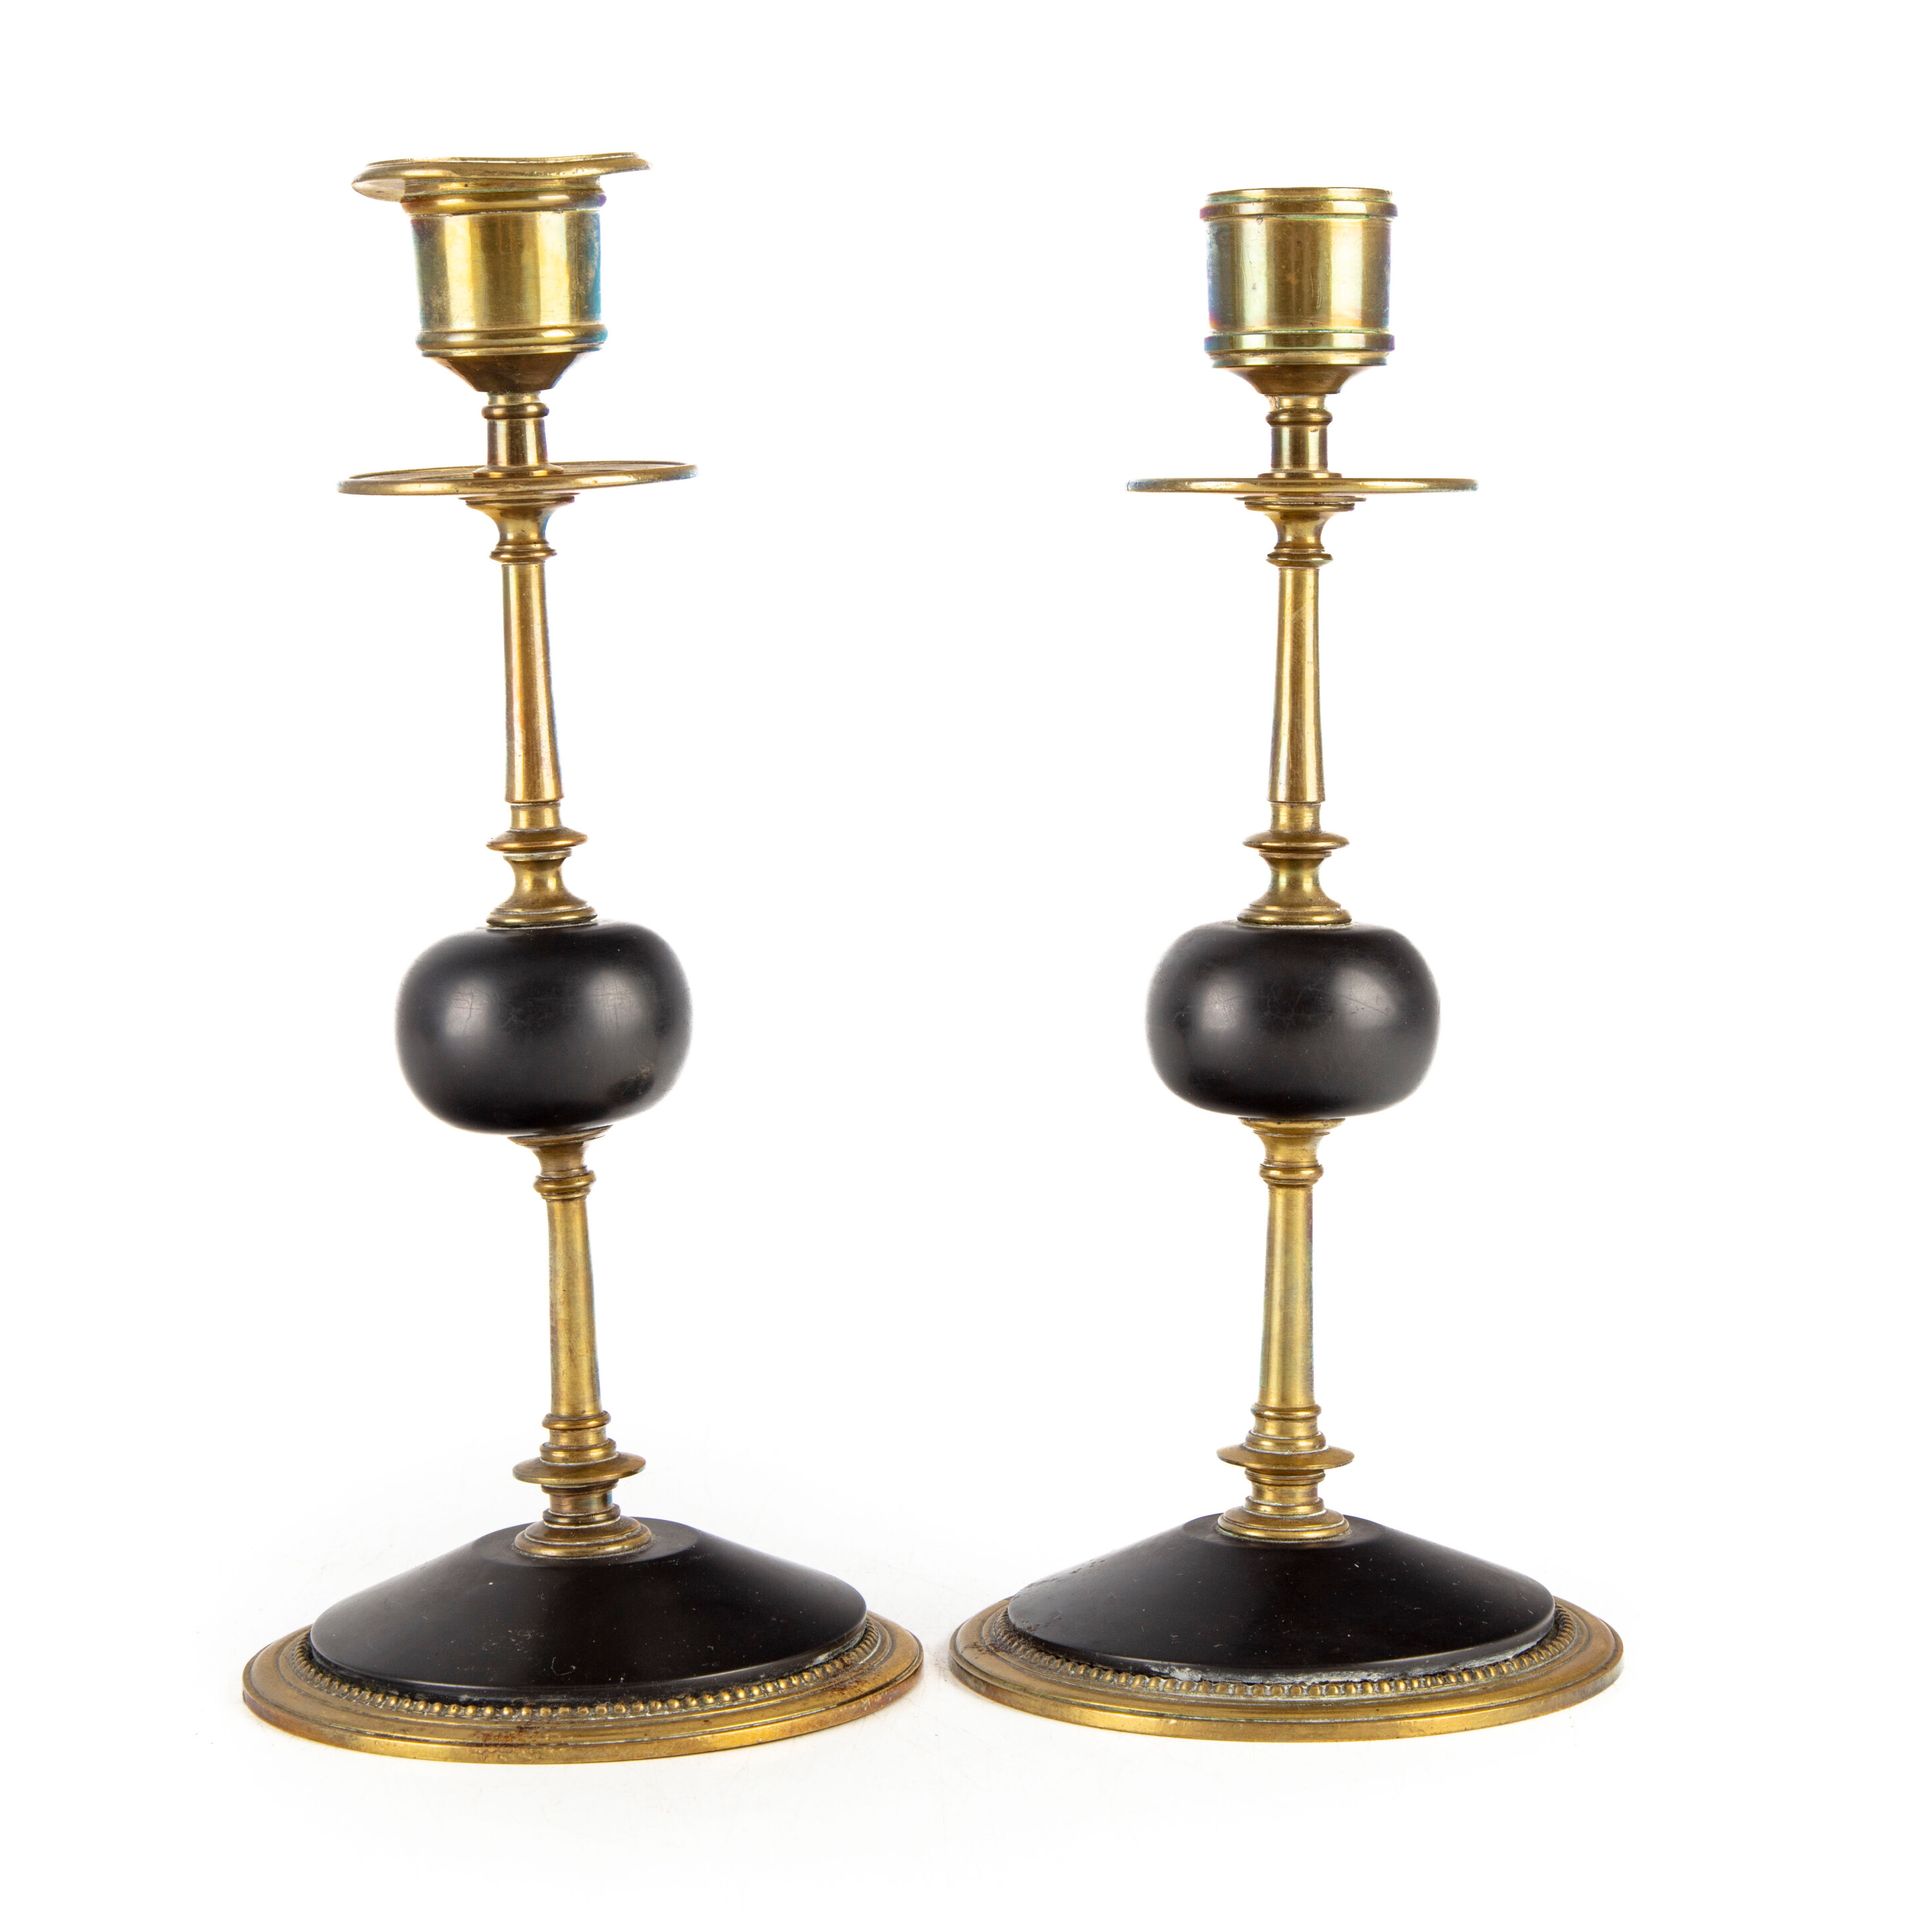 Null 黄铜和黑色大理石烛台一对

19世纪晚期

H.22厘米

小的凹痕和缺失